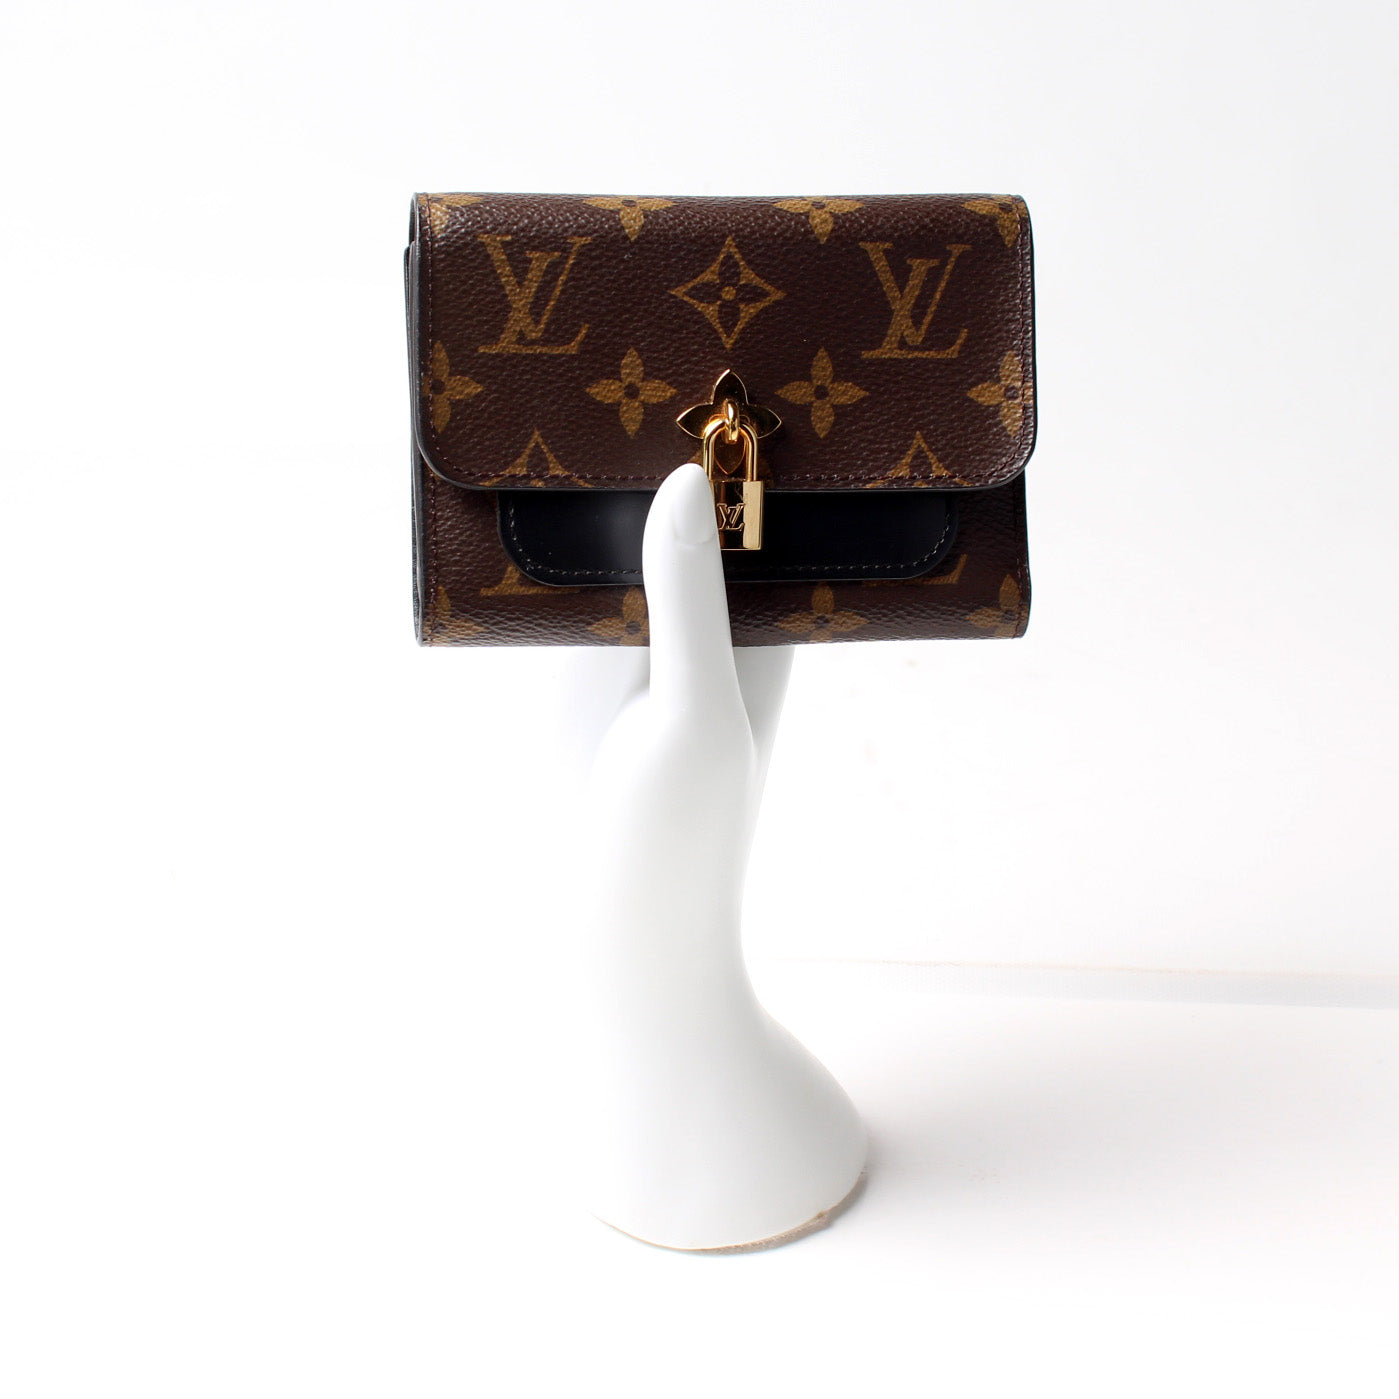 Louis Vuitton Monogram Canvas Flower Compact Wallet